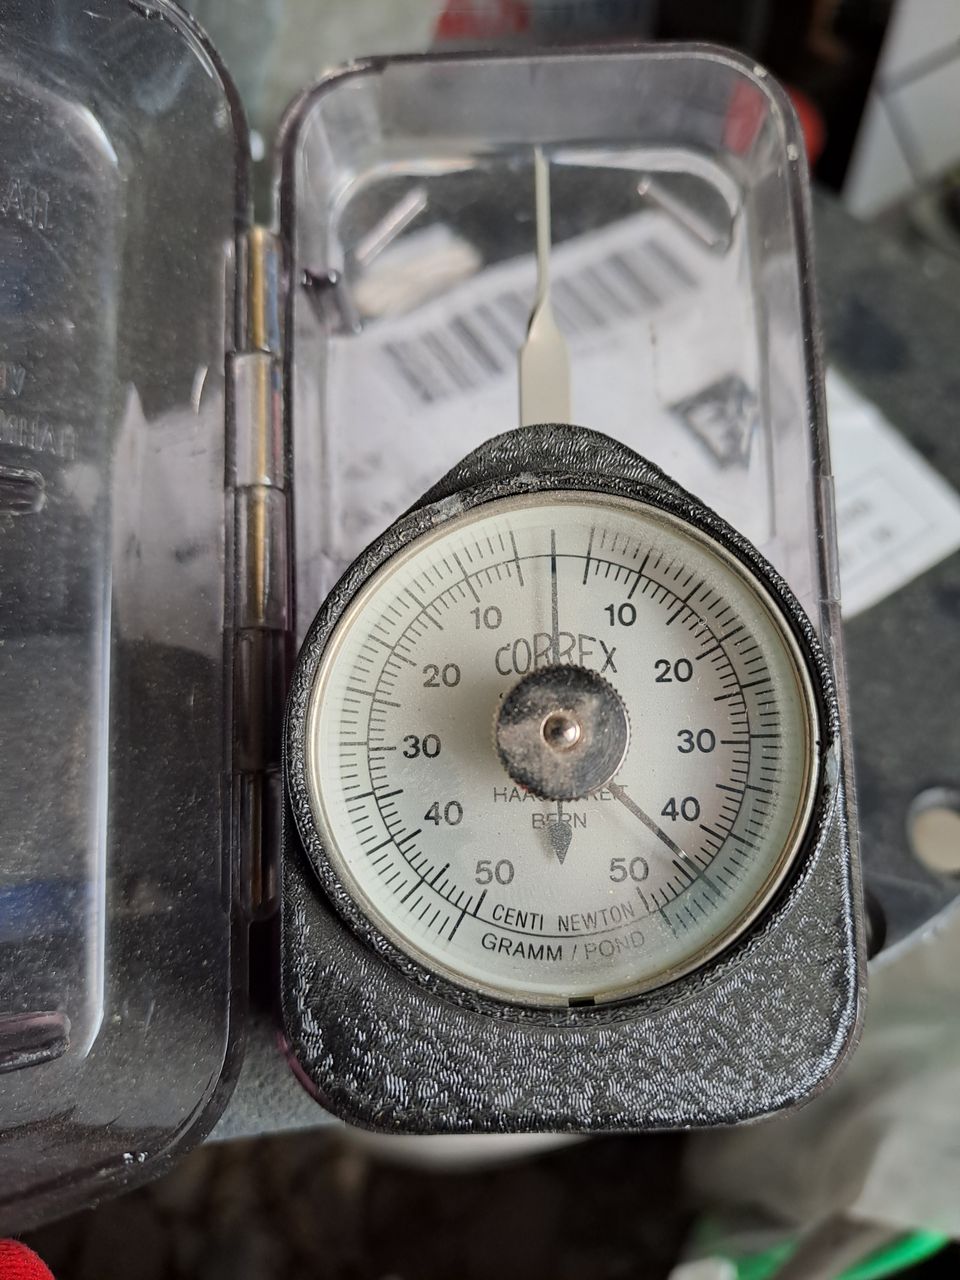 haag-streit correx tension gauge 0-50